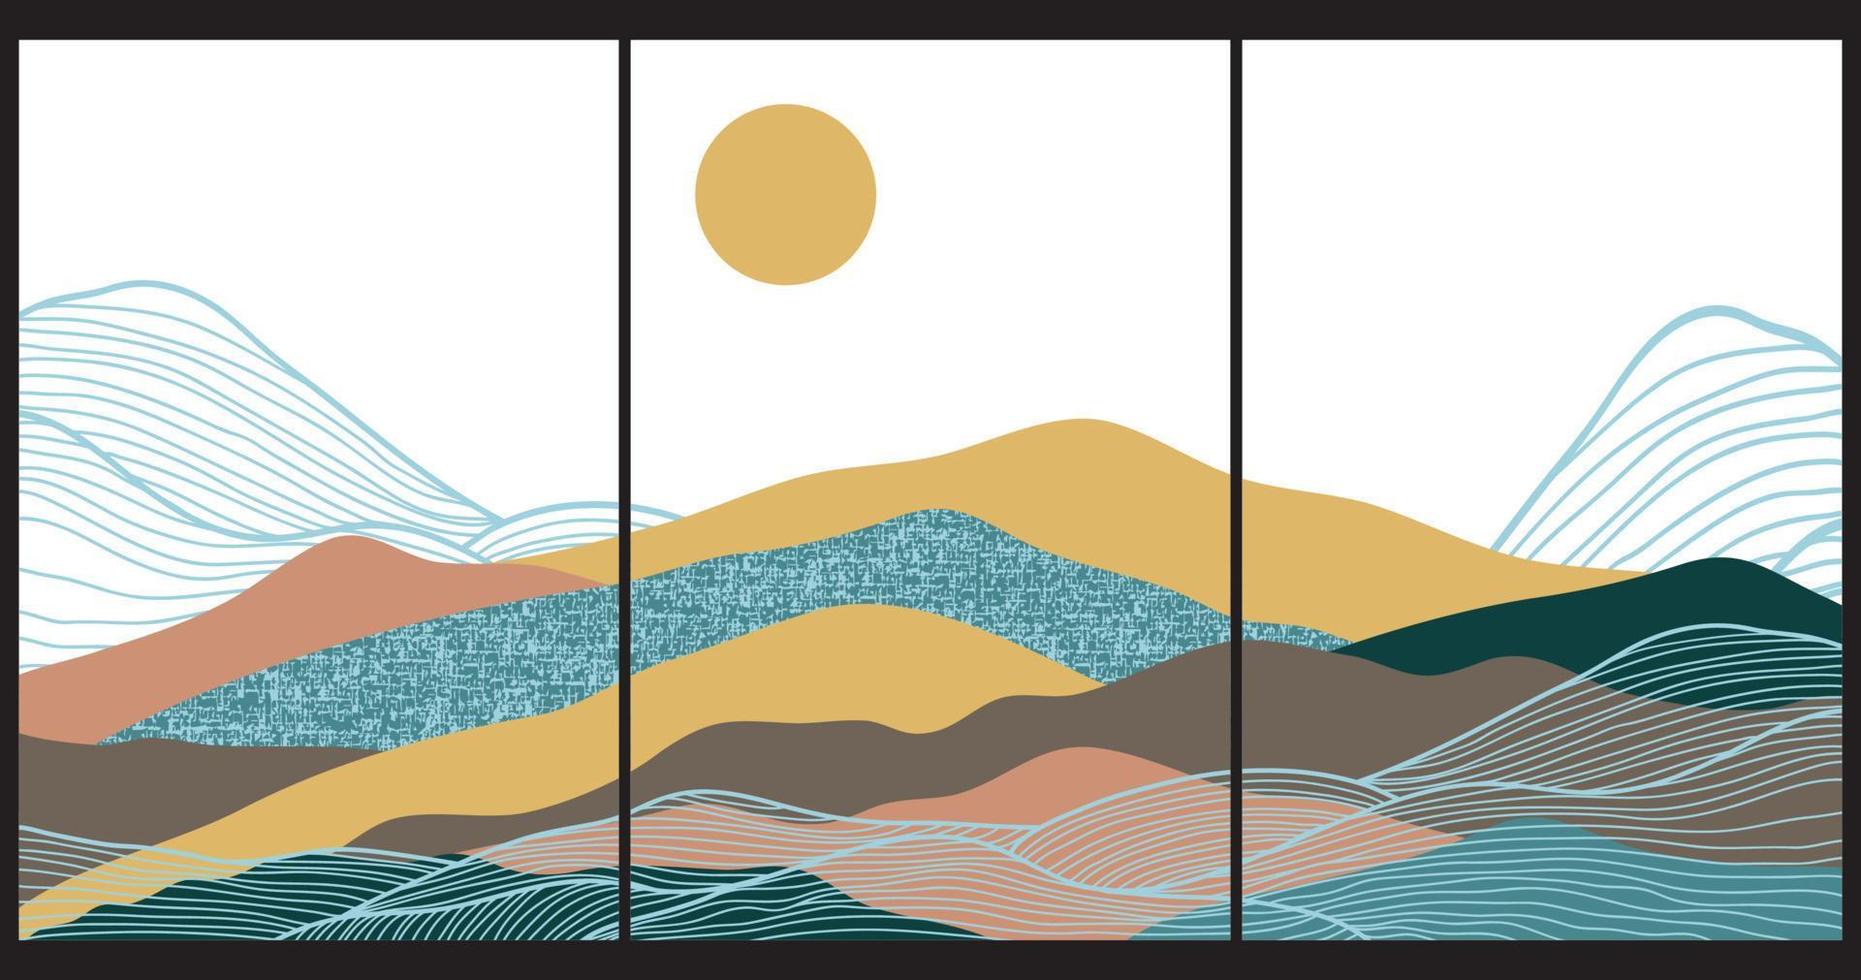 fundo japonês com vetor de padrão de onda de linha. modelo abstrato com padrão geométrico. projeto de layout de montanha em estilo oriental.